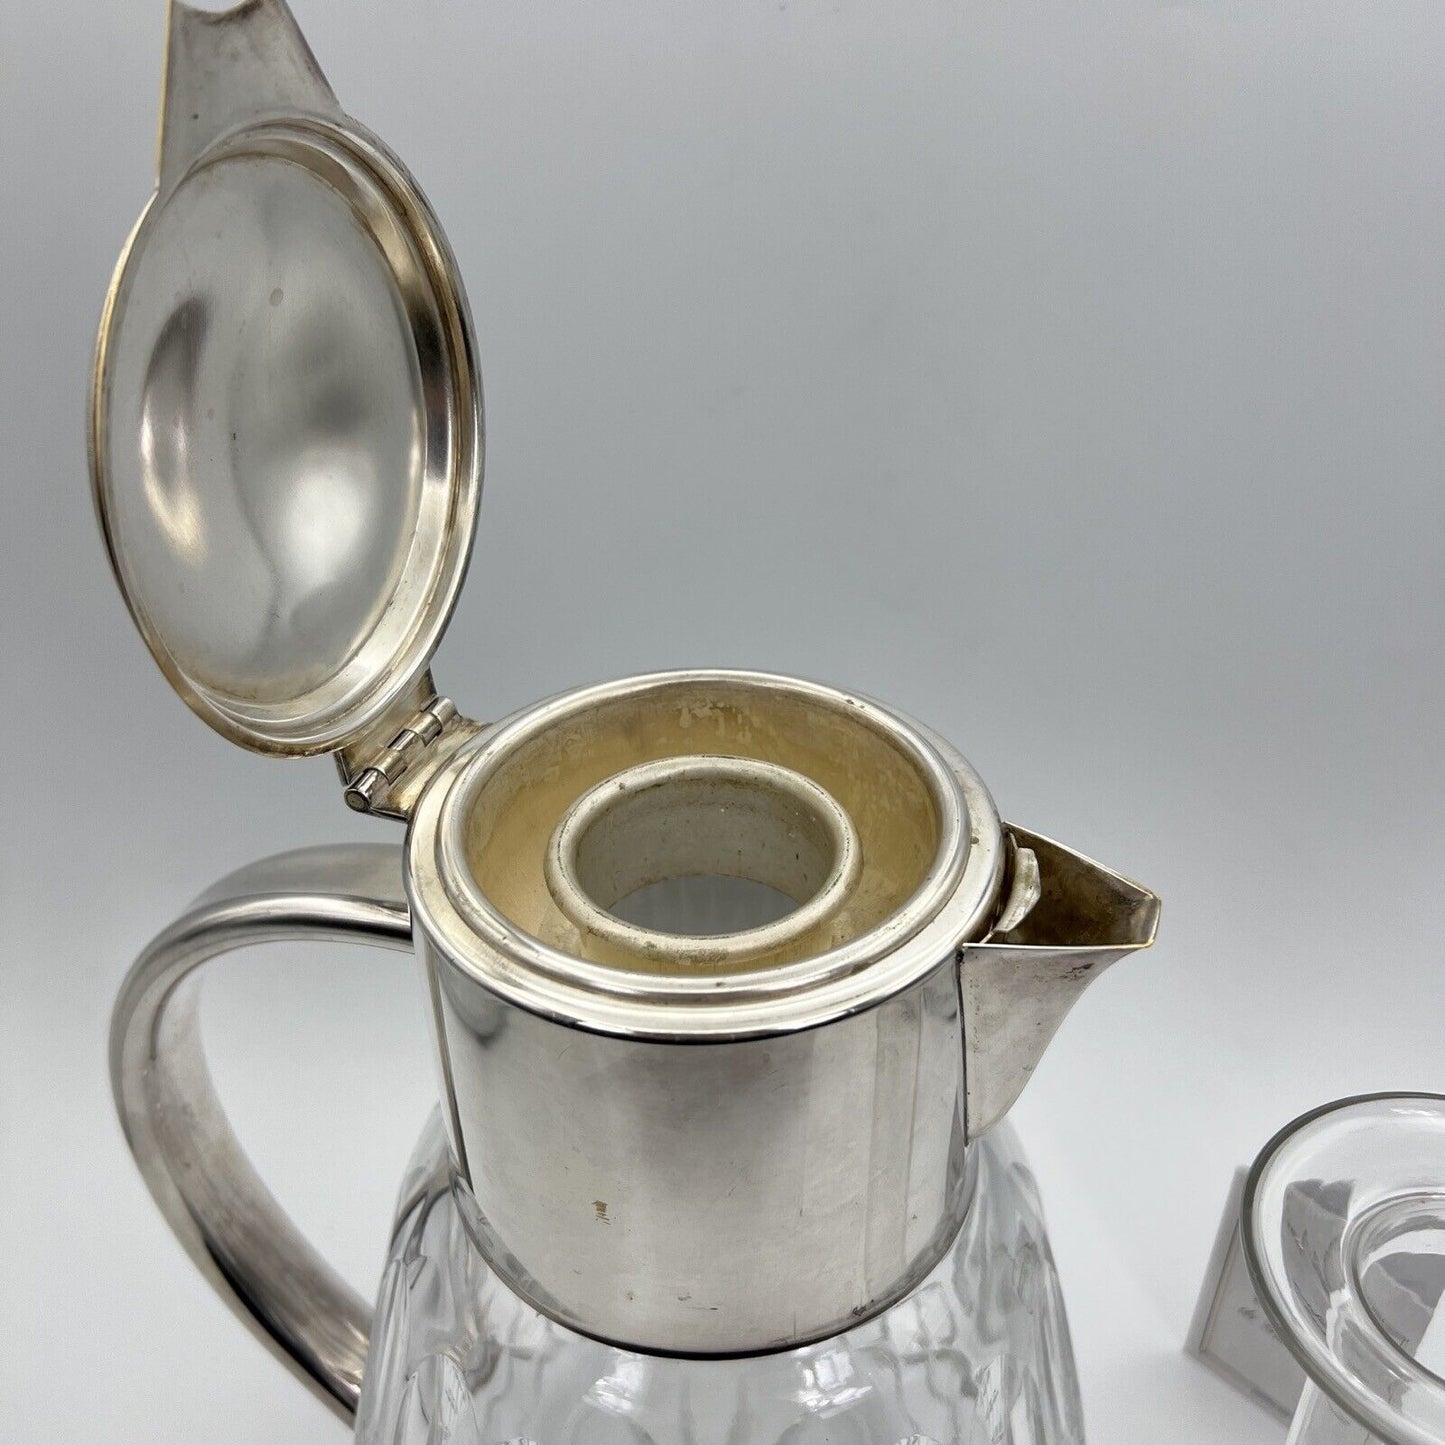 Brocca caraffa antica in cristallo argento silver plated decanter porta ghiaccio